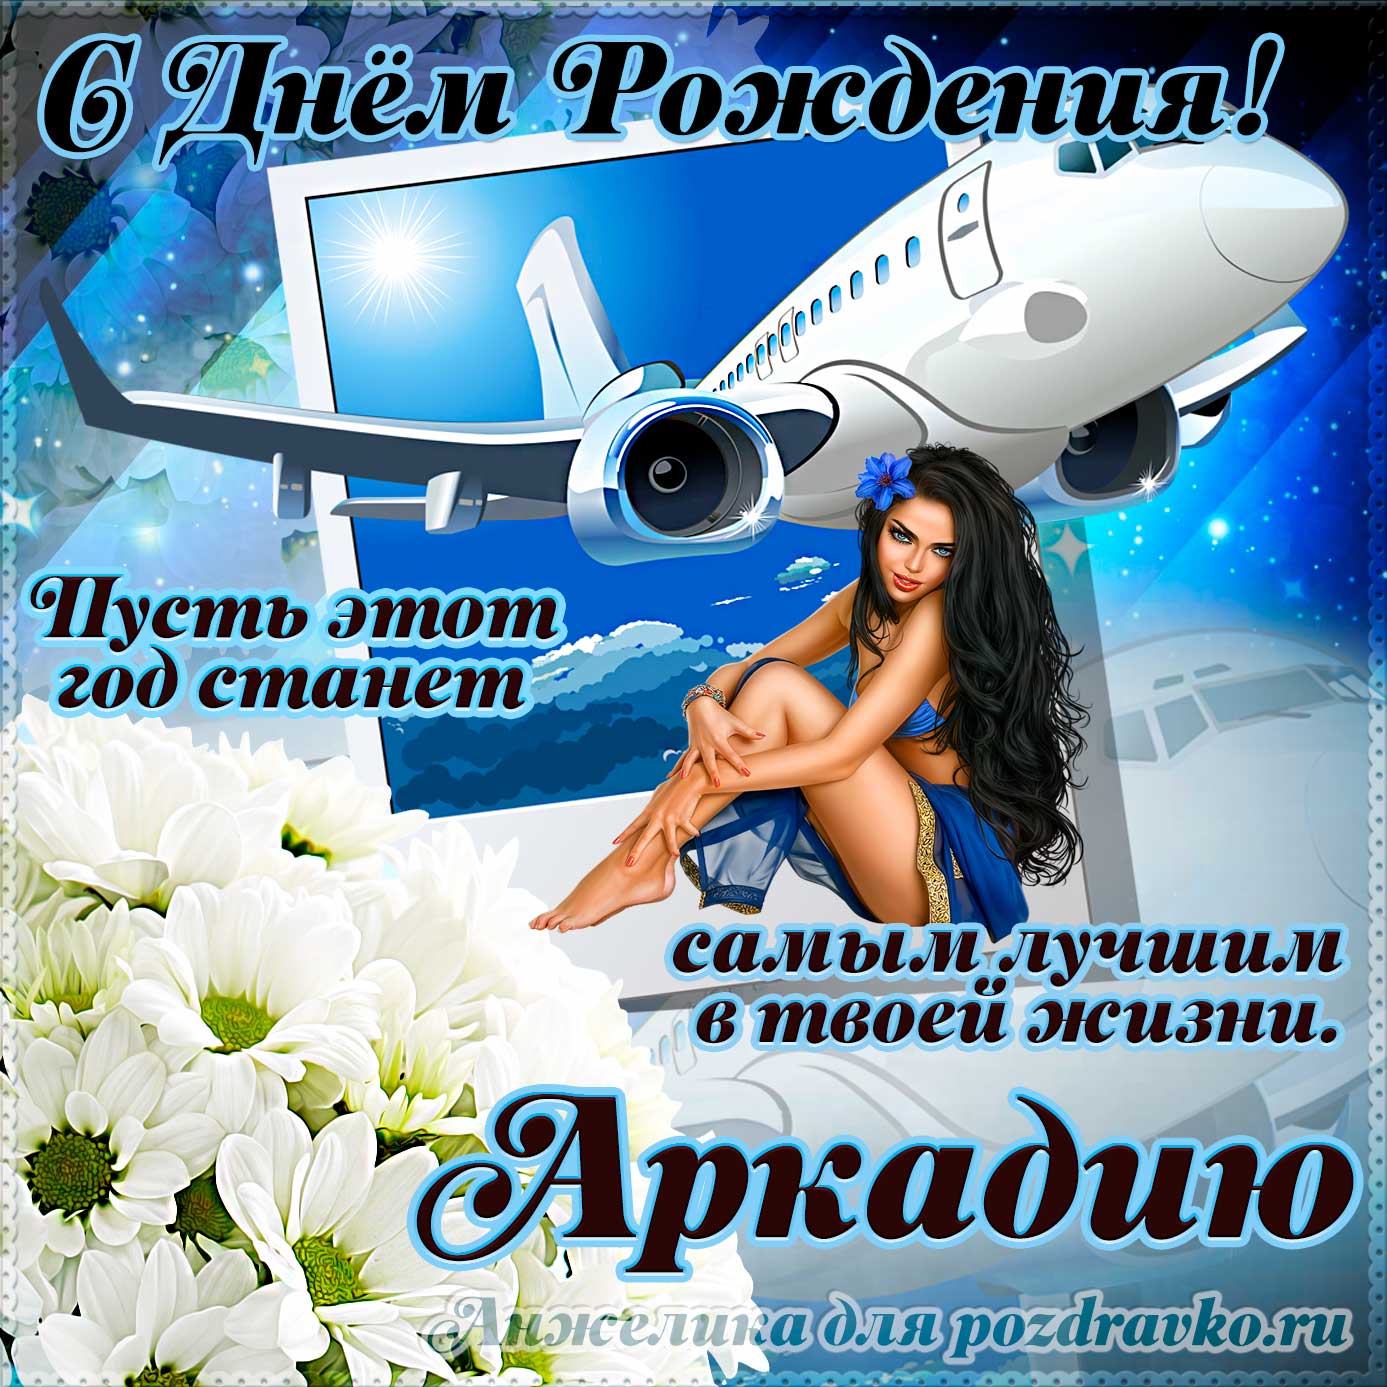 Открытка - Аркадию на день рождения с красивым пожеланием самолетом и девушкой. Скачать бесплатно или отправить картинку.